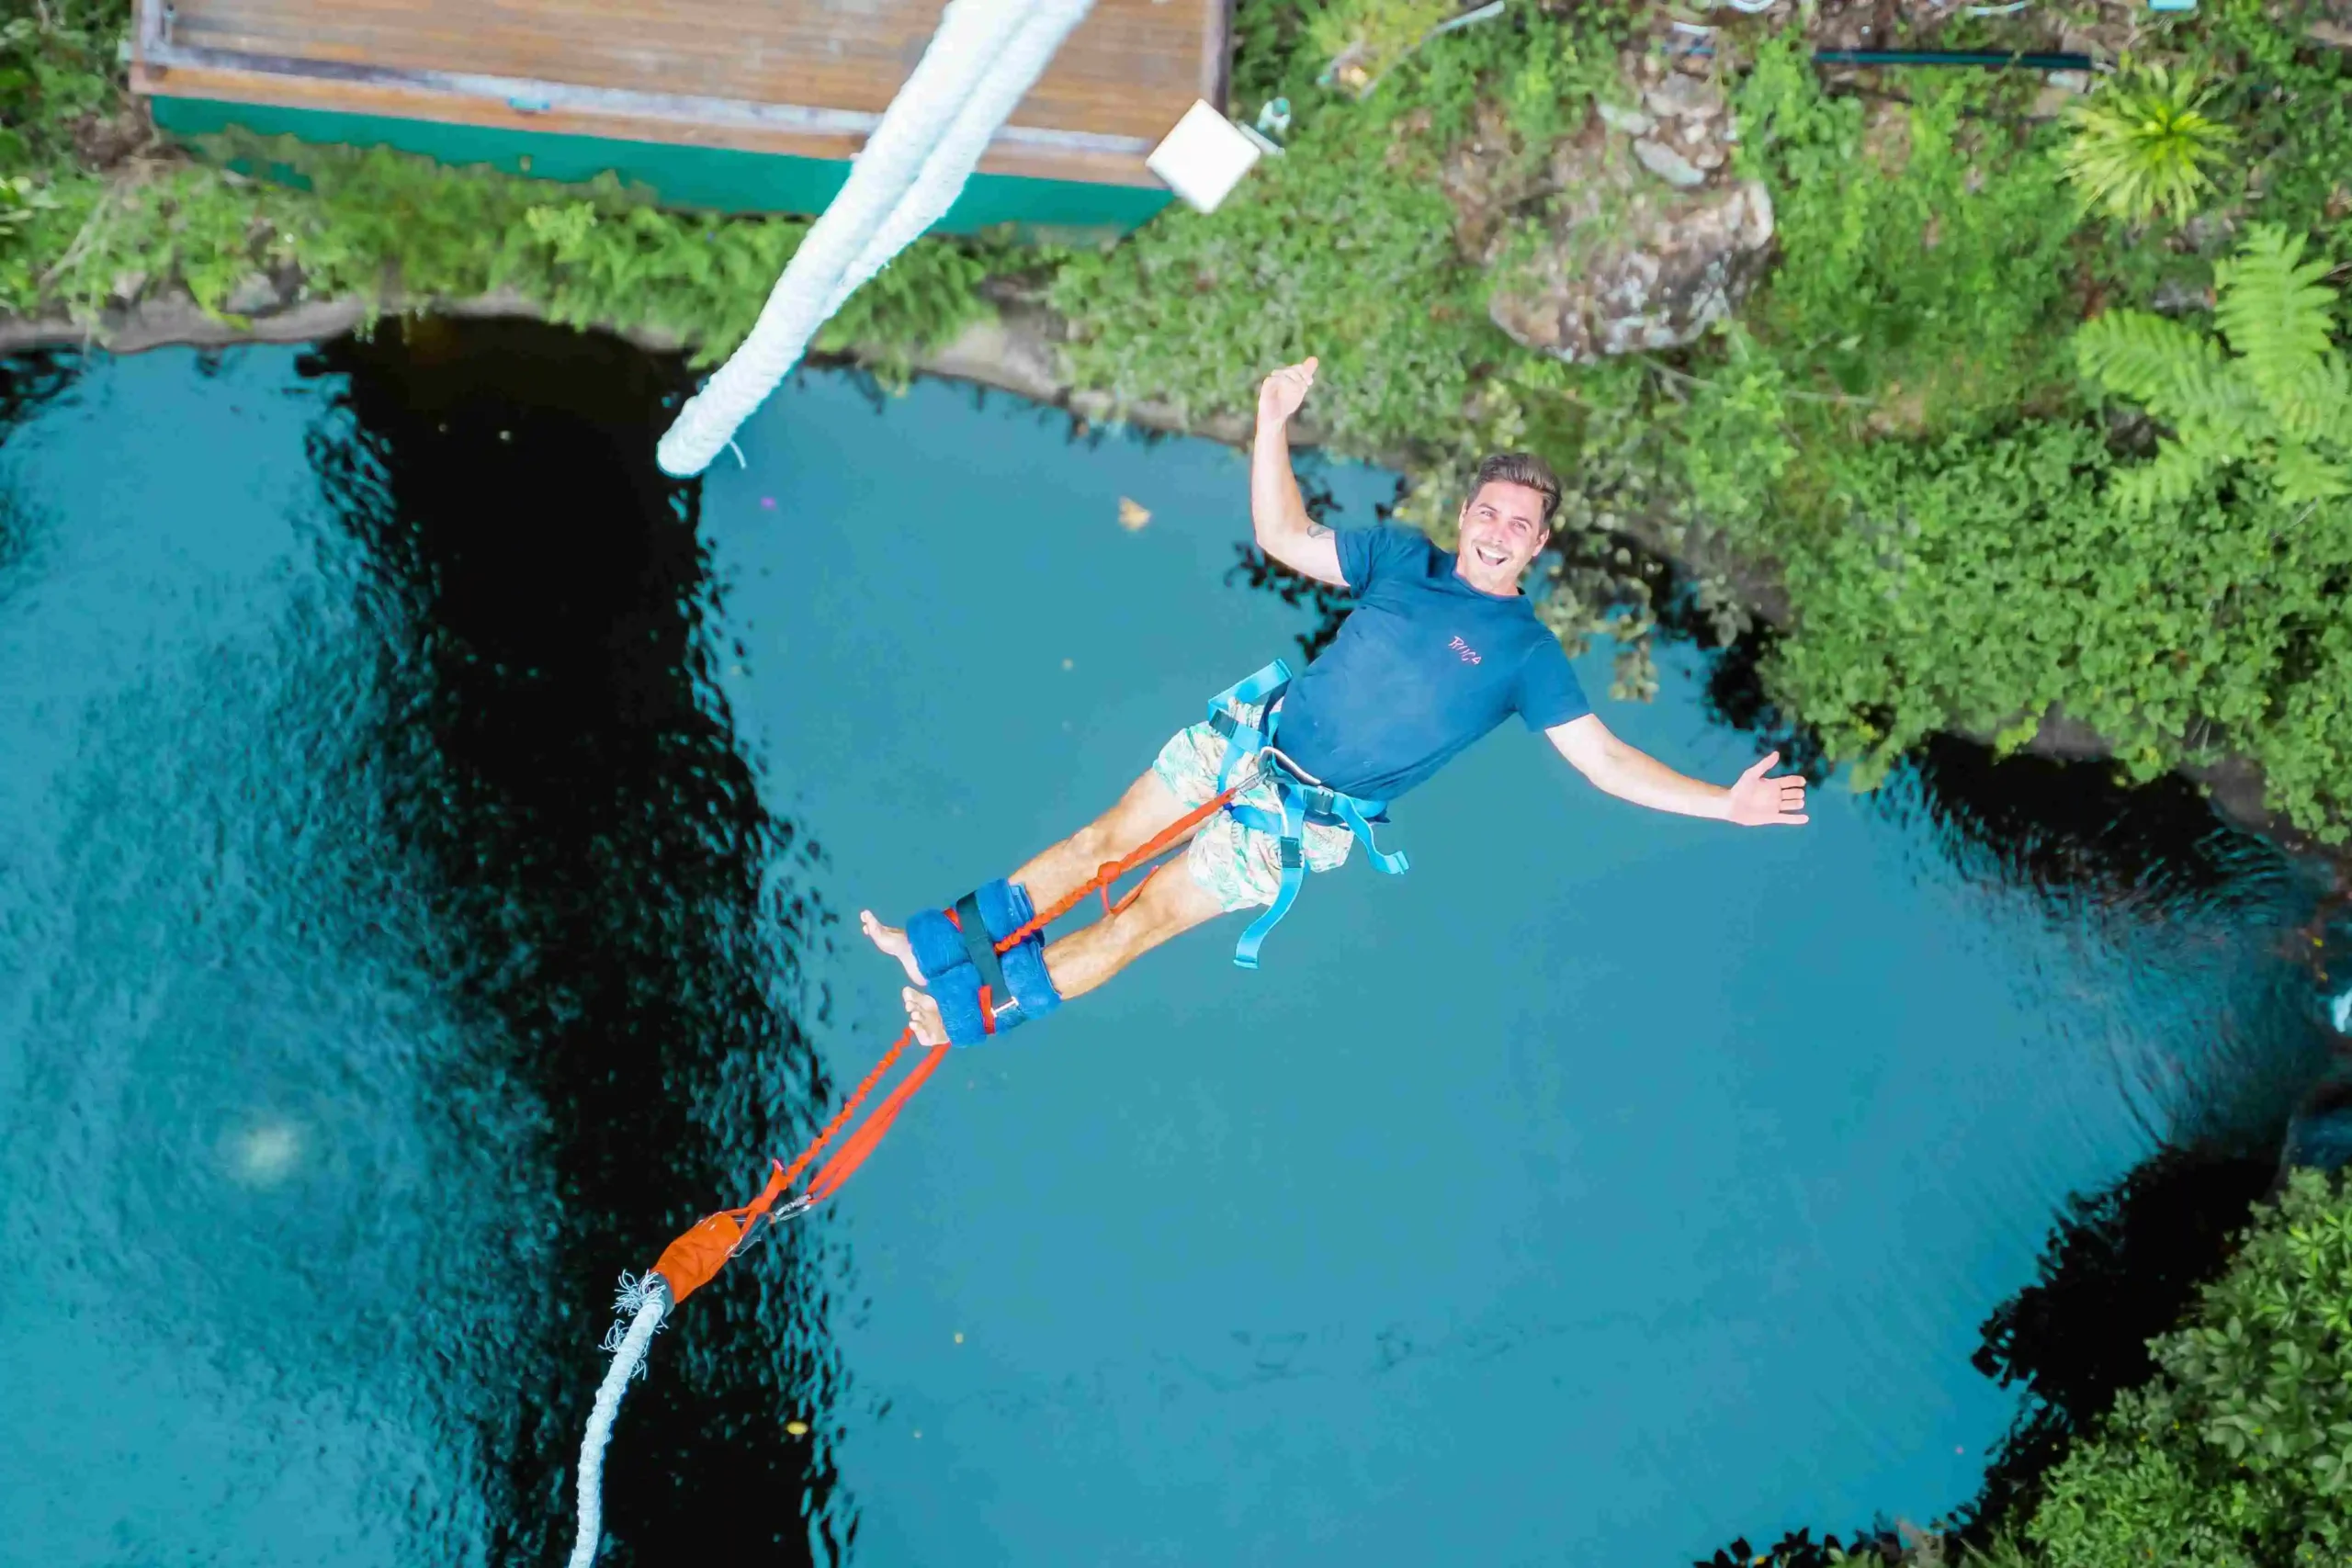 Man bungy jumping backwards over a lake